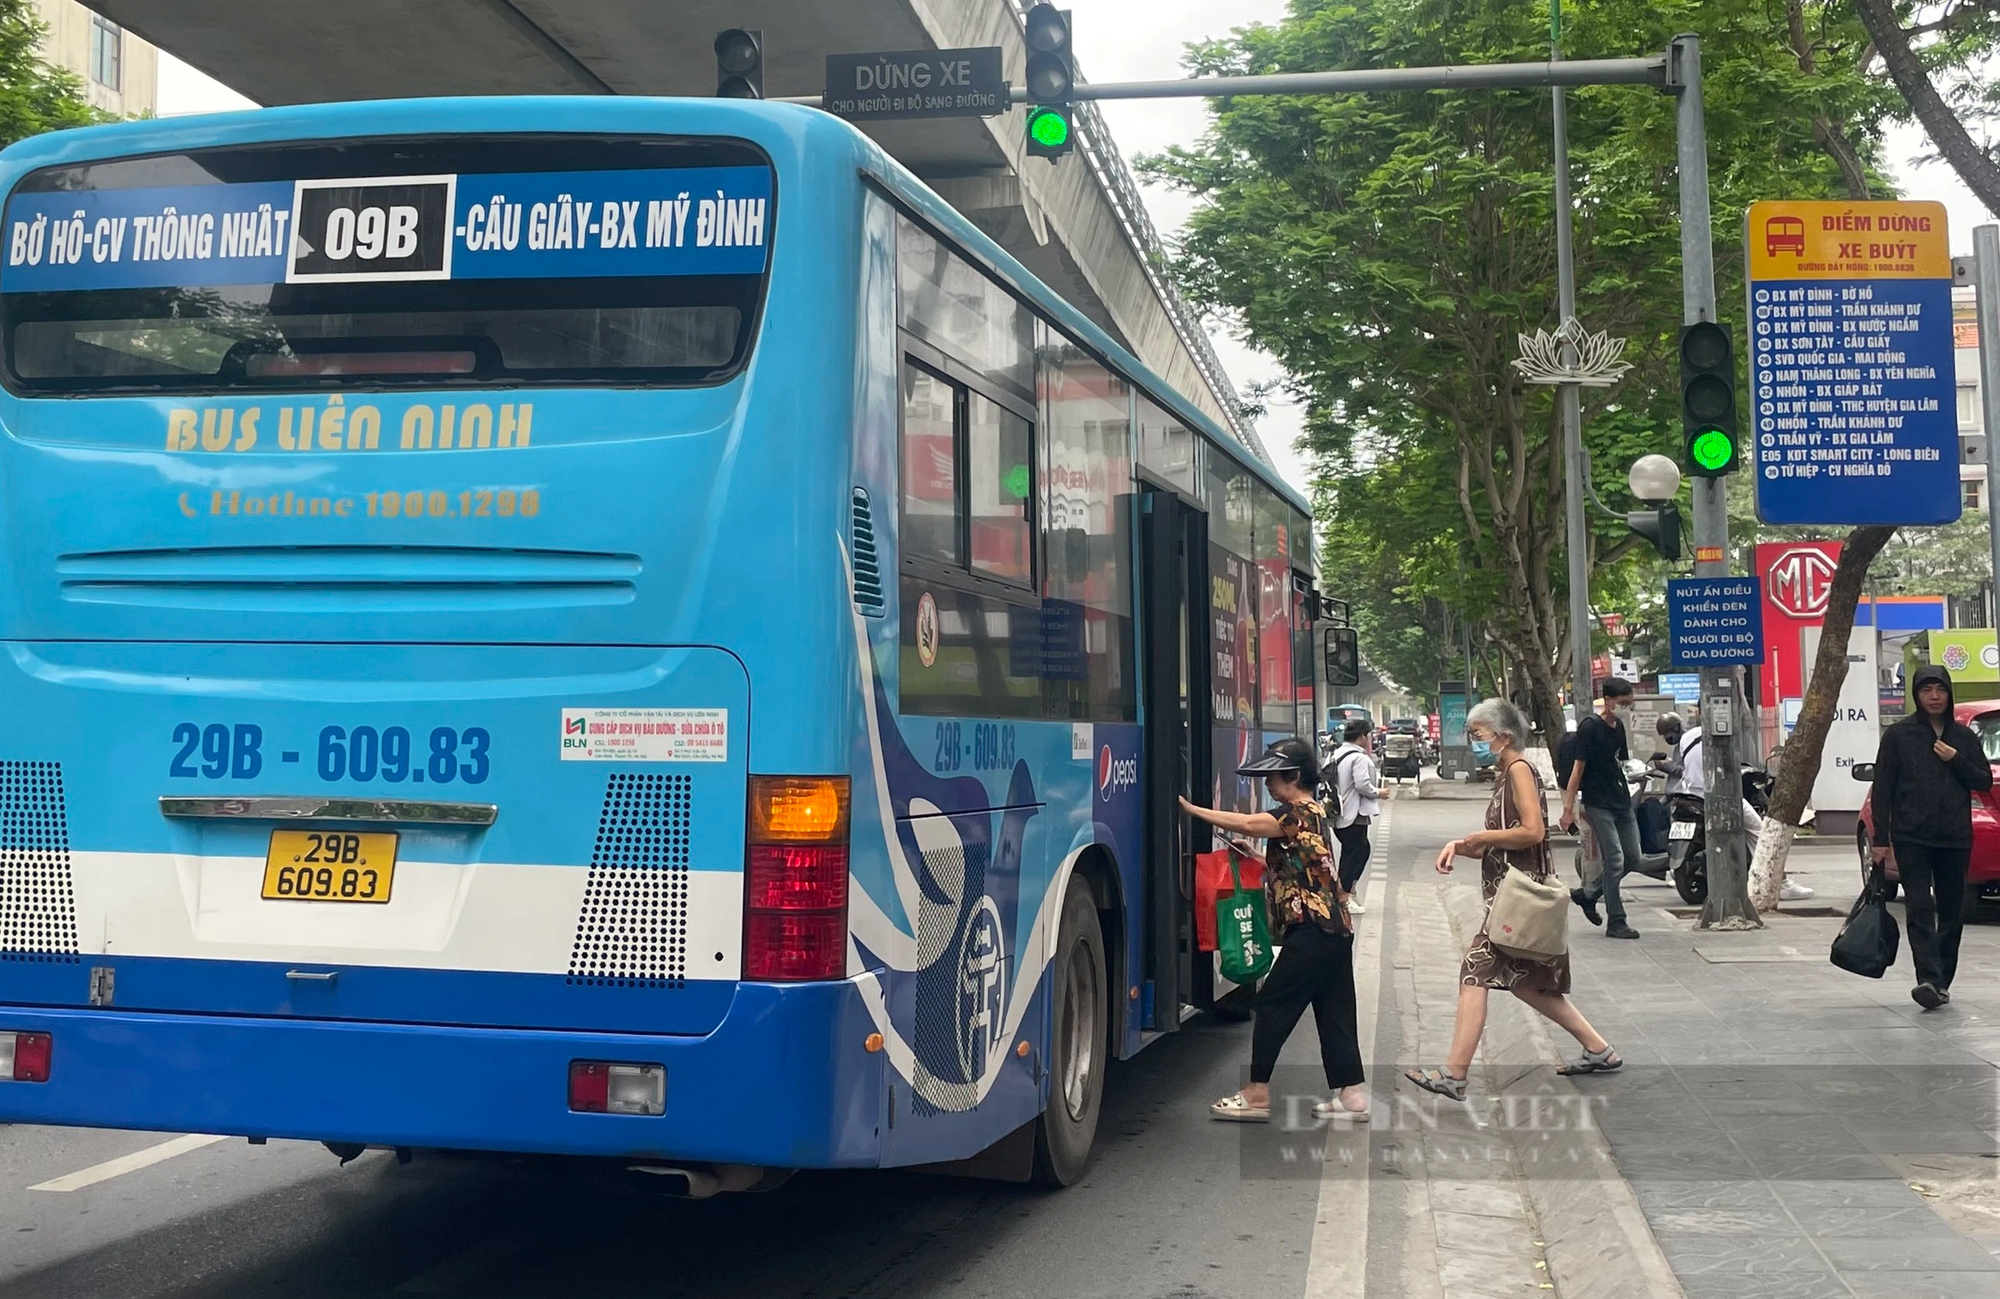 Người dân Hà Nội đánh giá thẳng thật về dịch vụ thẻ xe buýt “ảo”- Ảnh 3.